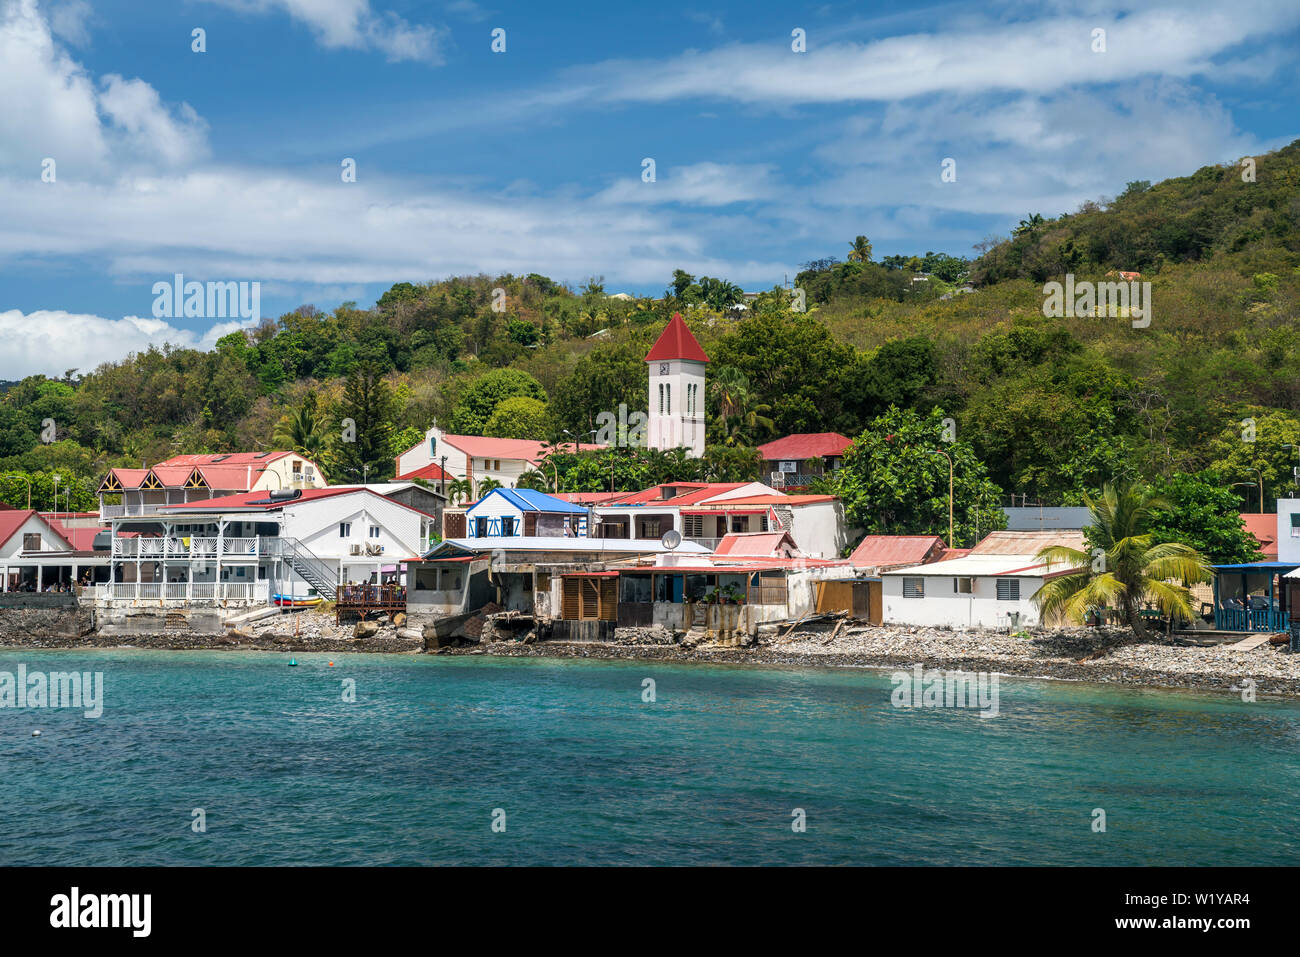 Das Dorf im Norden von Basse-Terre Deshaies, Guadeloupe, Frankreich | Deshaies Dorf im Norden von Basse-Terre, Guadeloupe, Frankreich Stockfoto